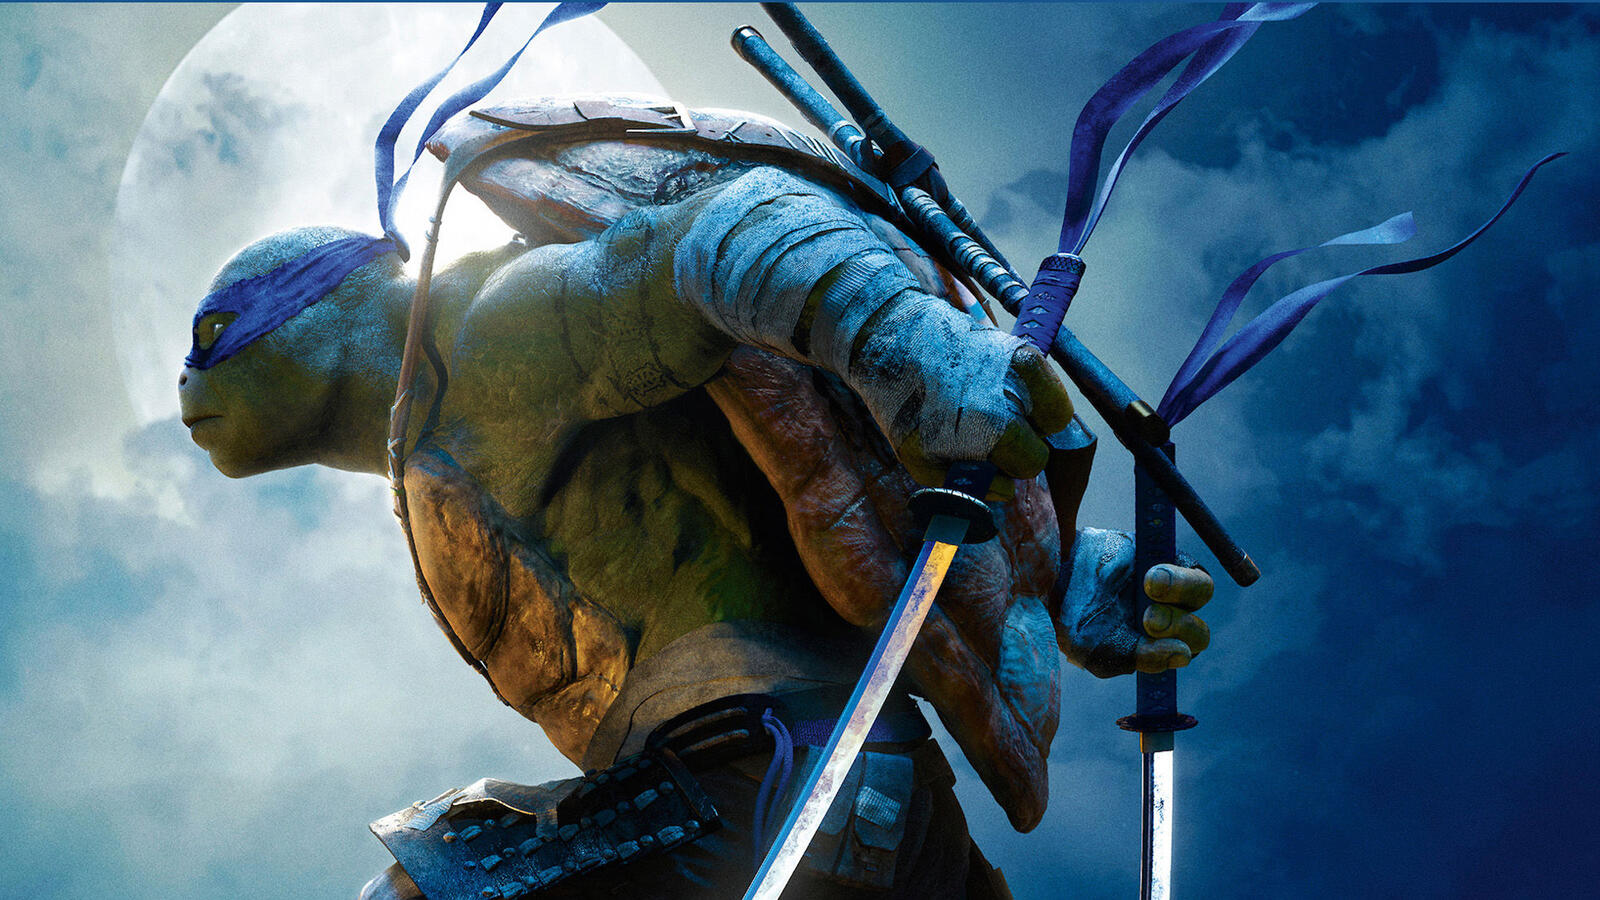 Wallpapers teenage mutant ninja turtles katana ninja turtle on the desktop